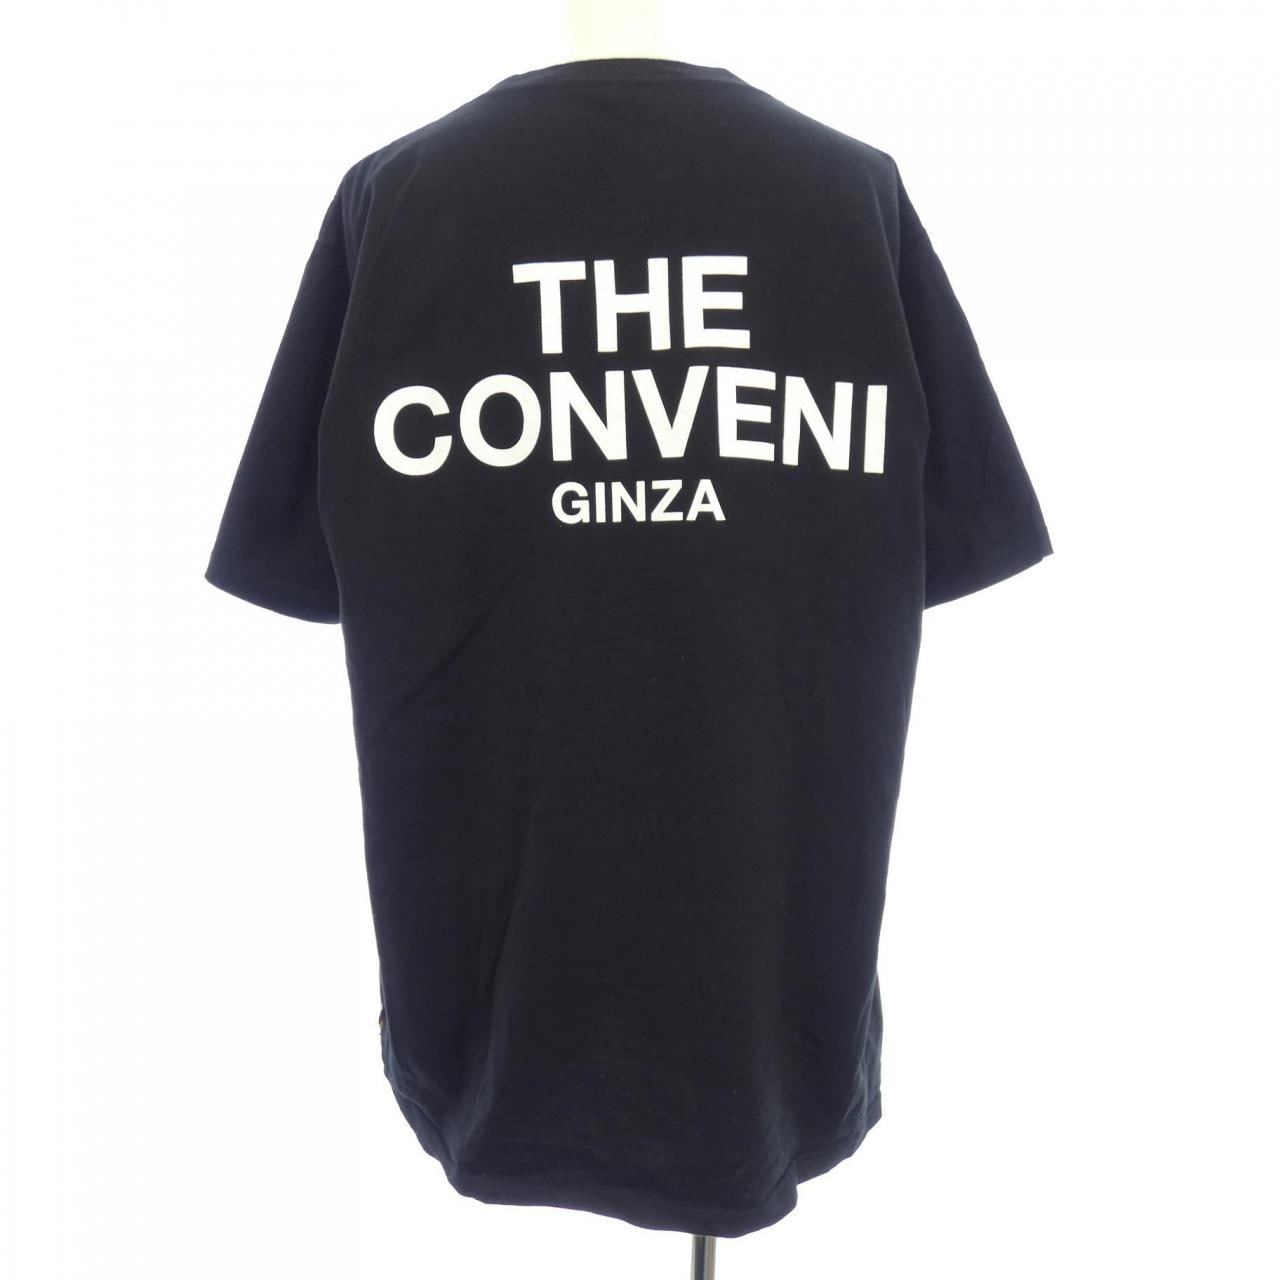 THE CONVENI Tシャツ